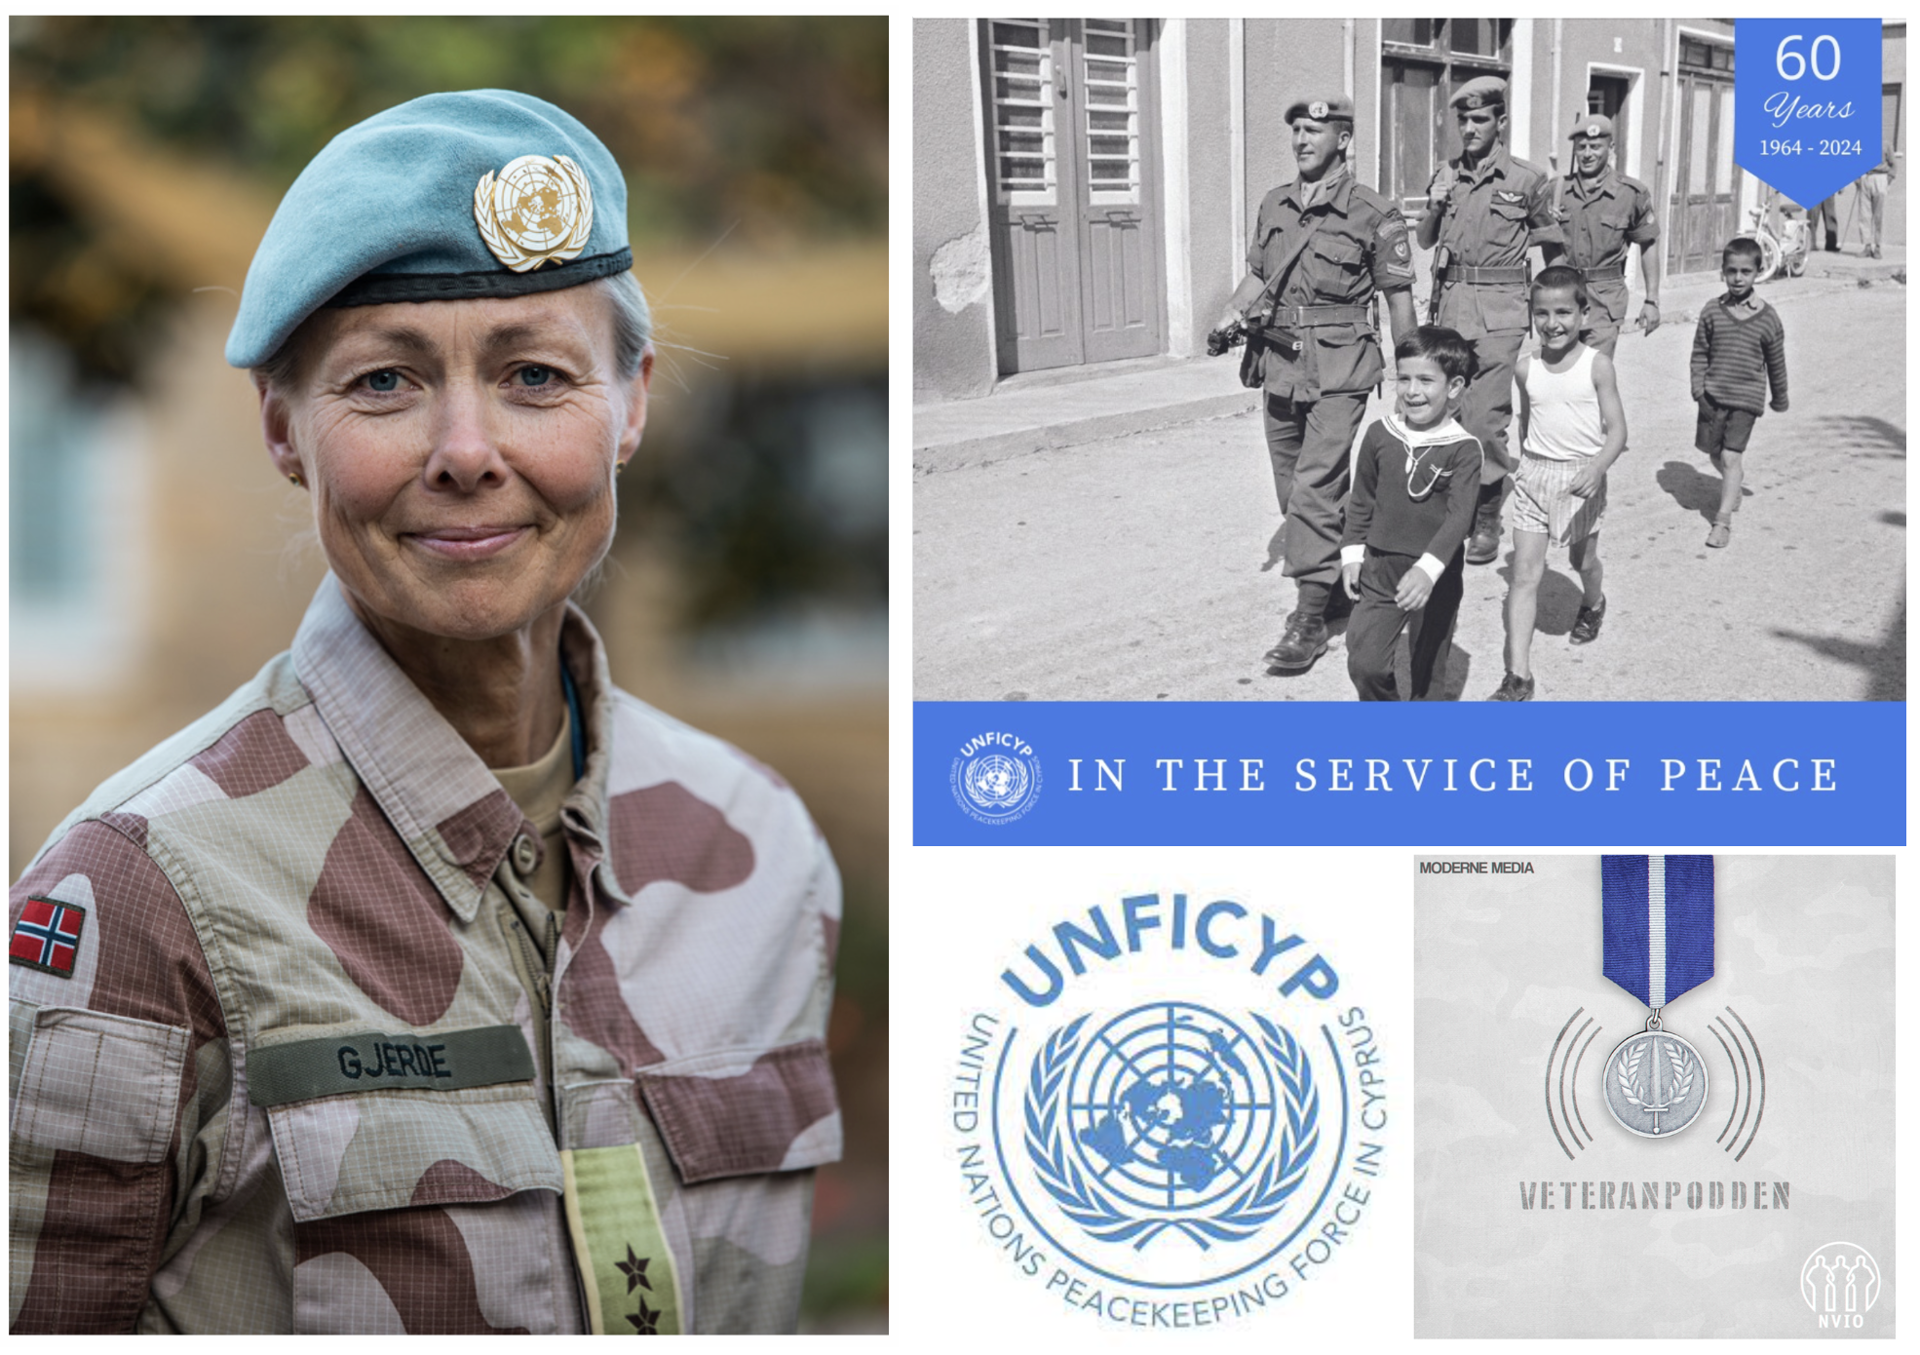 Episode 46: Ingrid Gjerde og UNFICYP 60 år